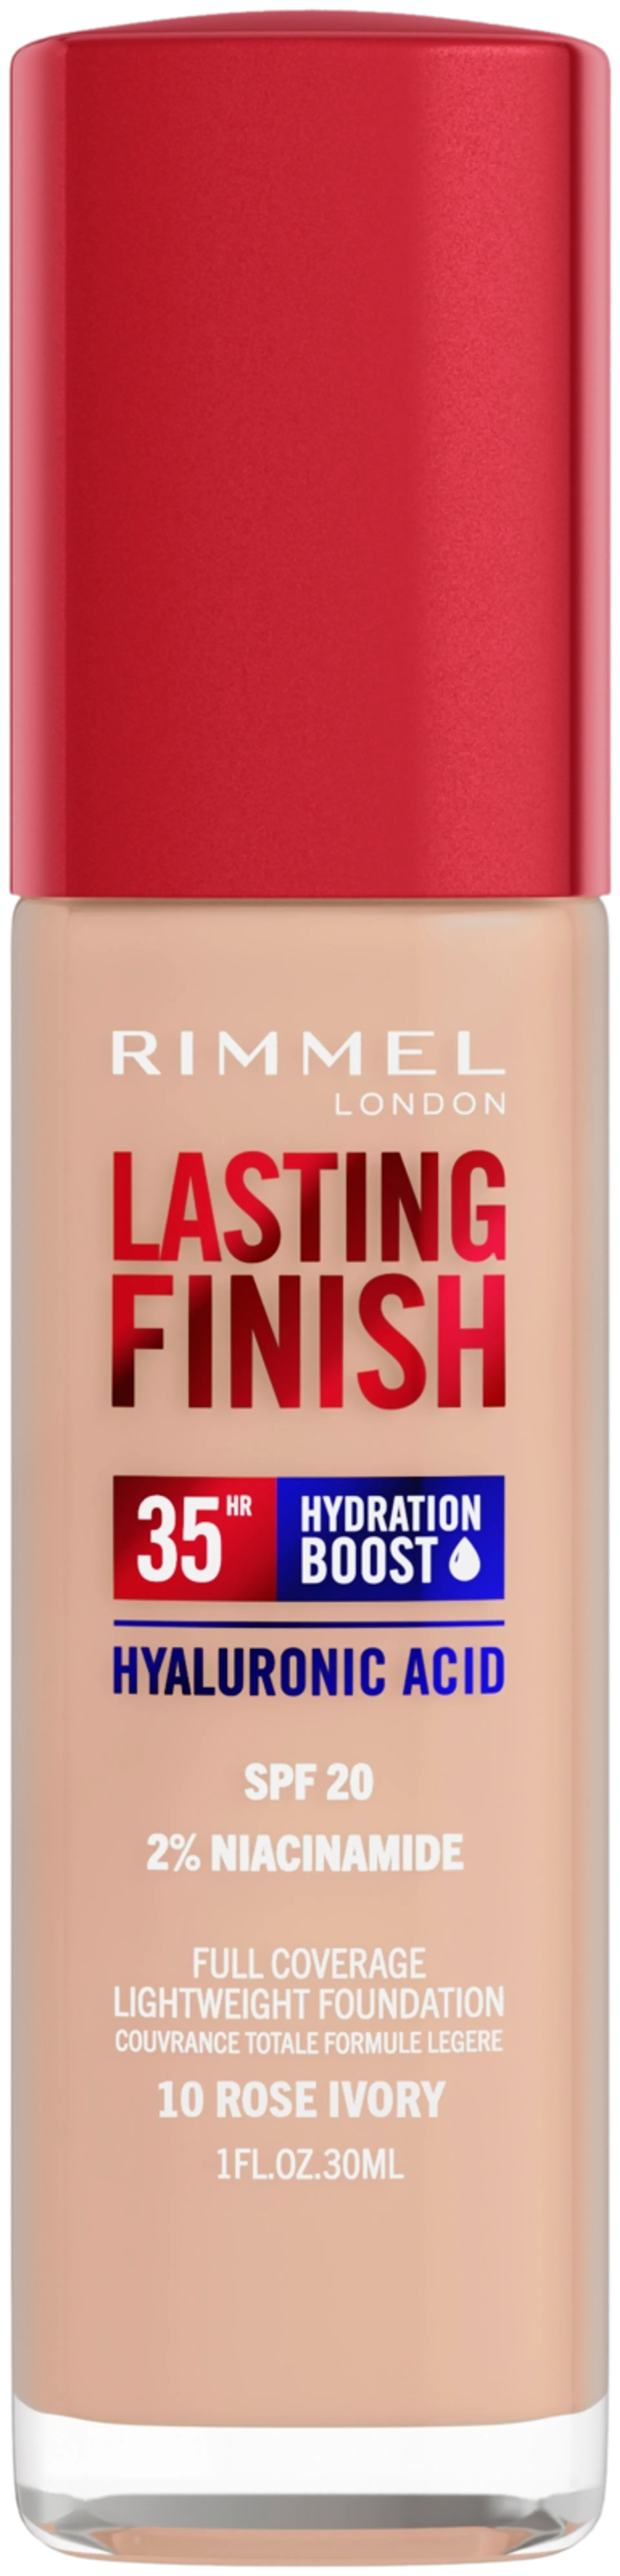 Rimmel Lasting Finish 35H Foundation meikkivoide 30ml, 010 Rose Ivory - Rose Ivory